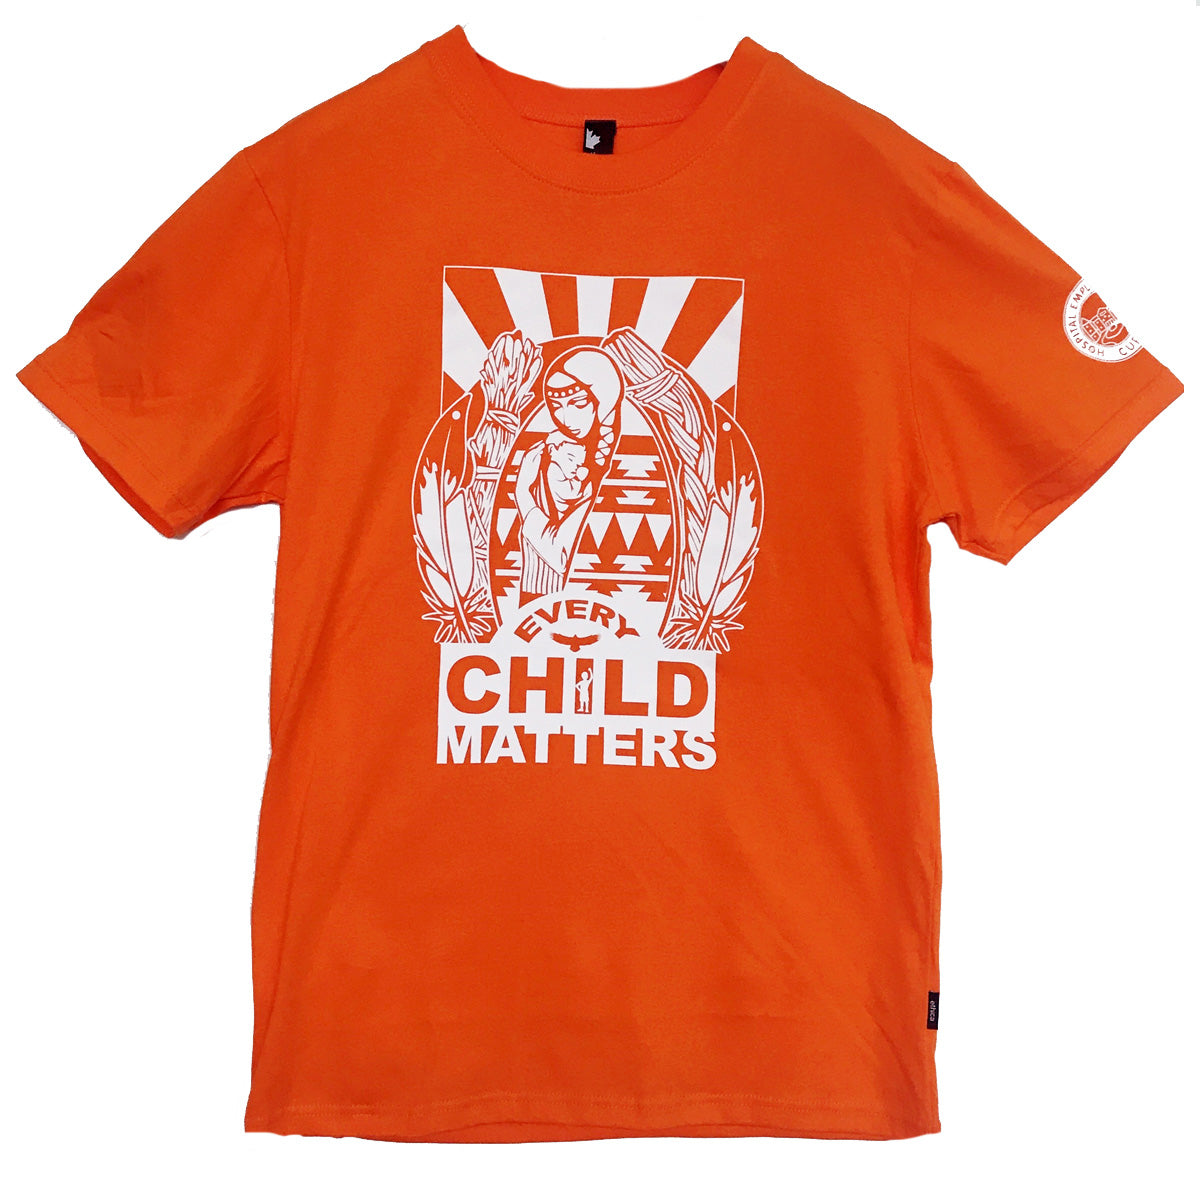 Orange Shirt Day T-Shirt - New!